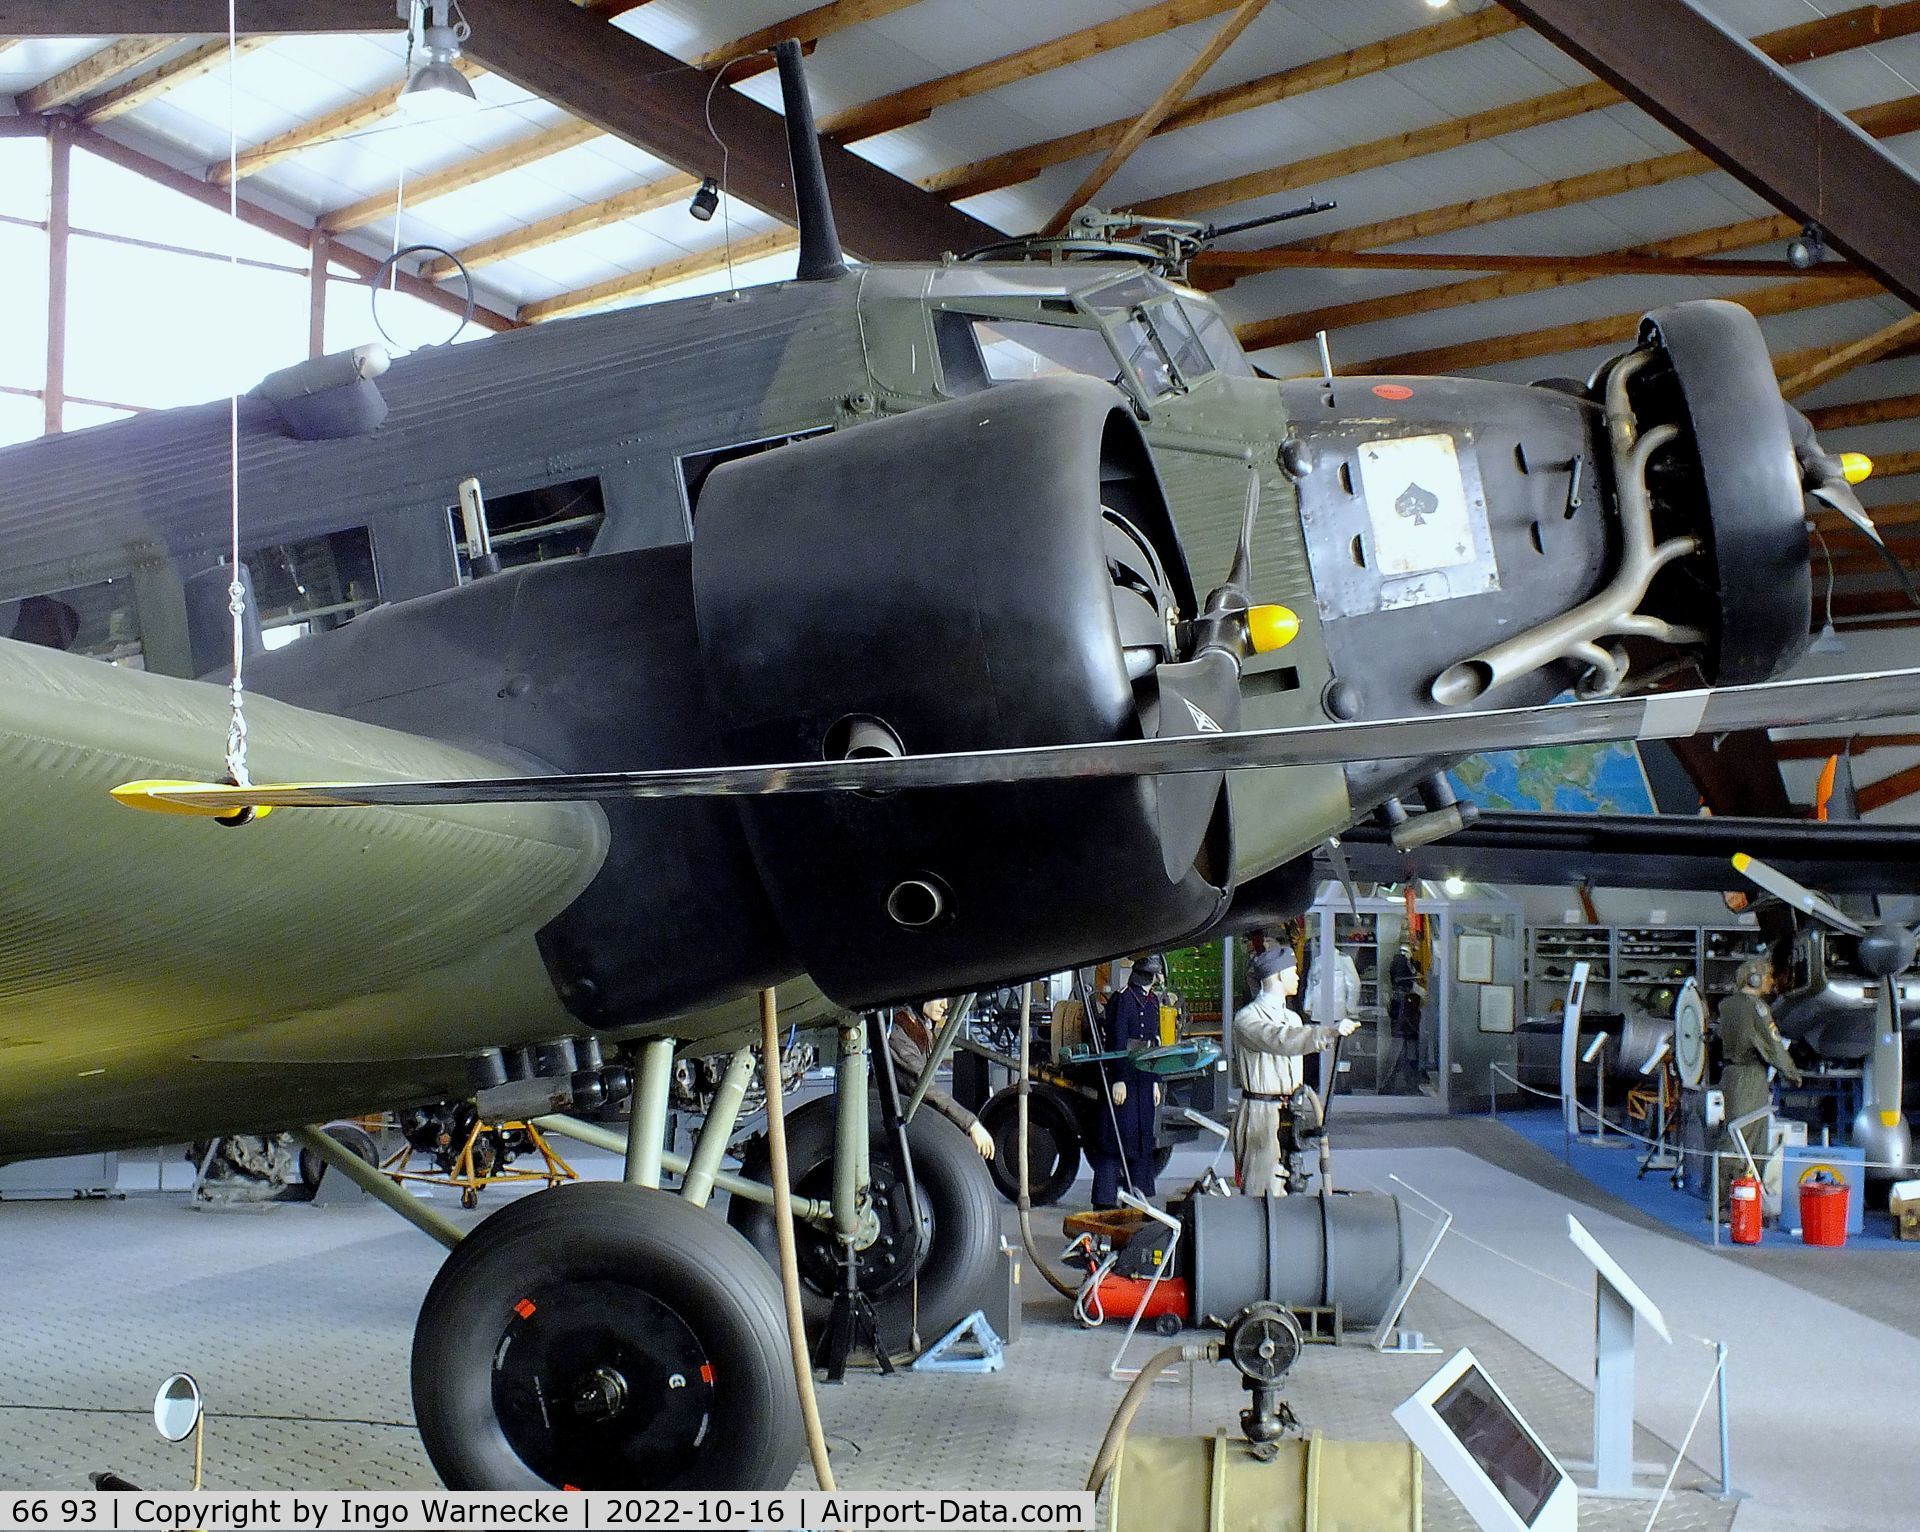 66 93, 1939 Junkers Ju-52/3mg4e C/N 6693, Junkers Ju 52/3m g4e at the Ju52-Halle (Lufttransportmuseum), Wunstorf